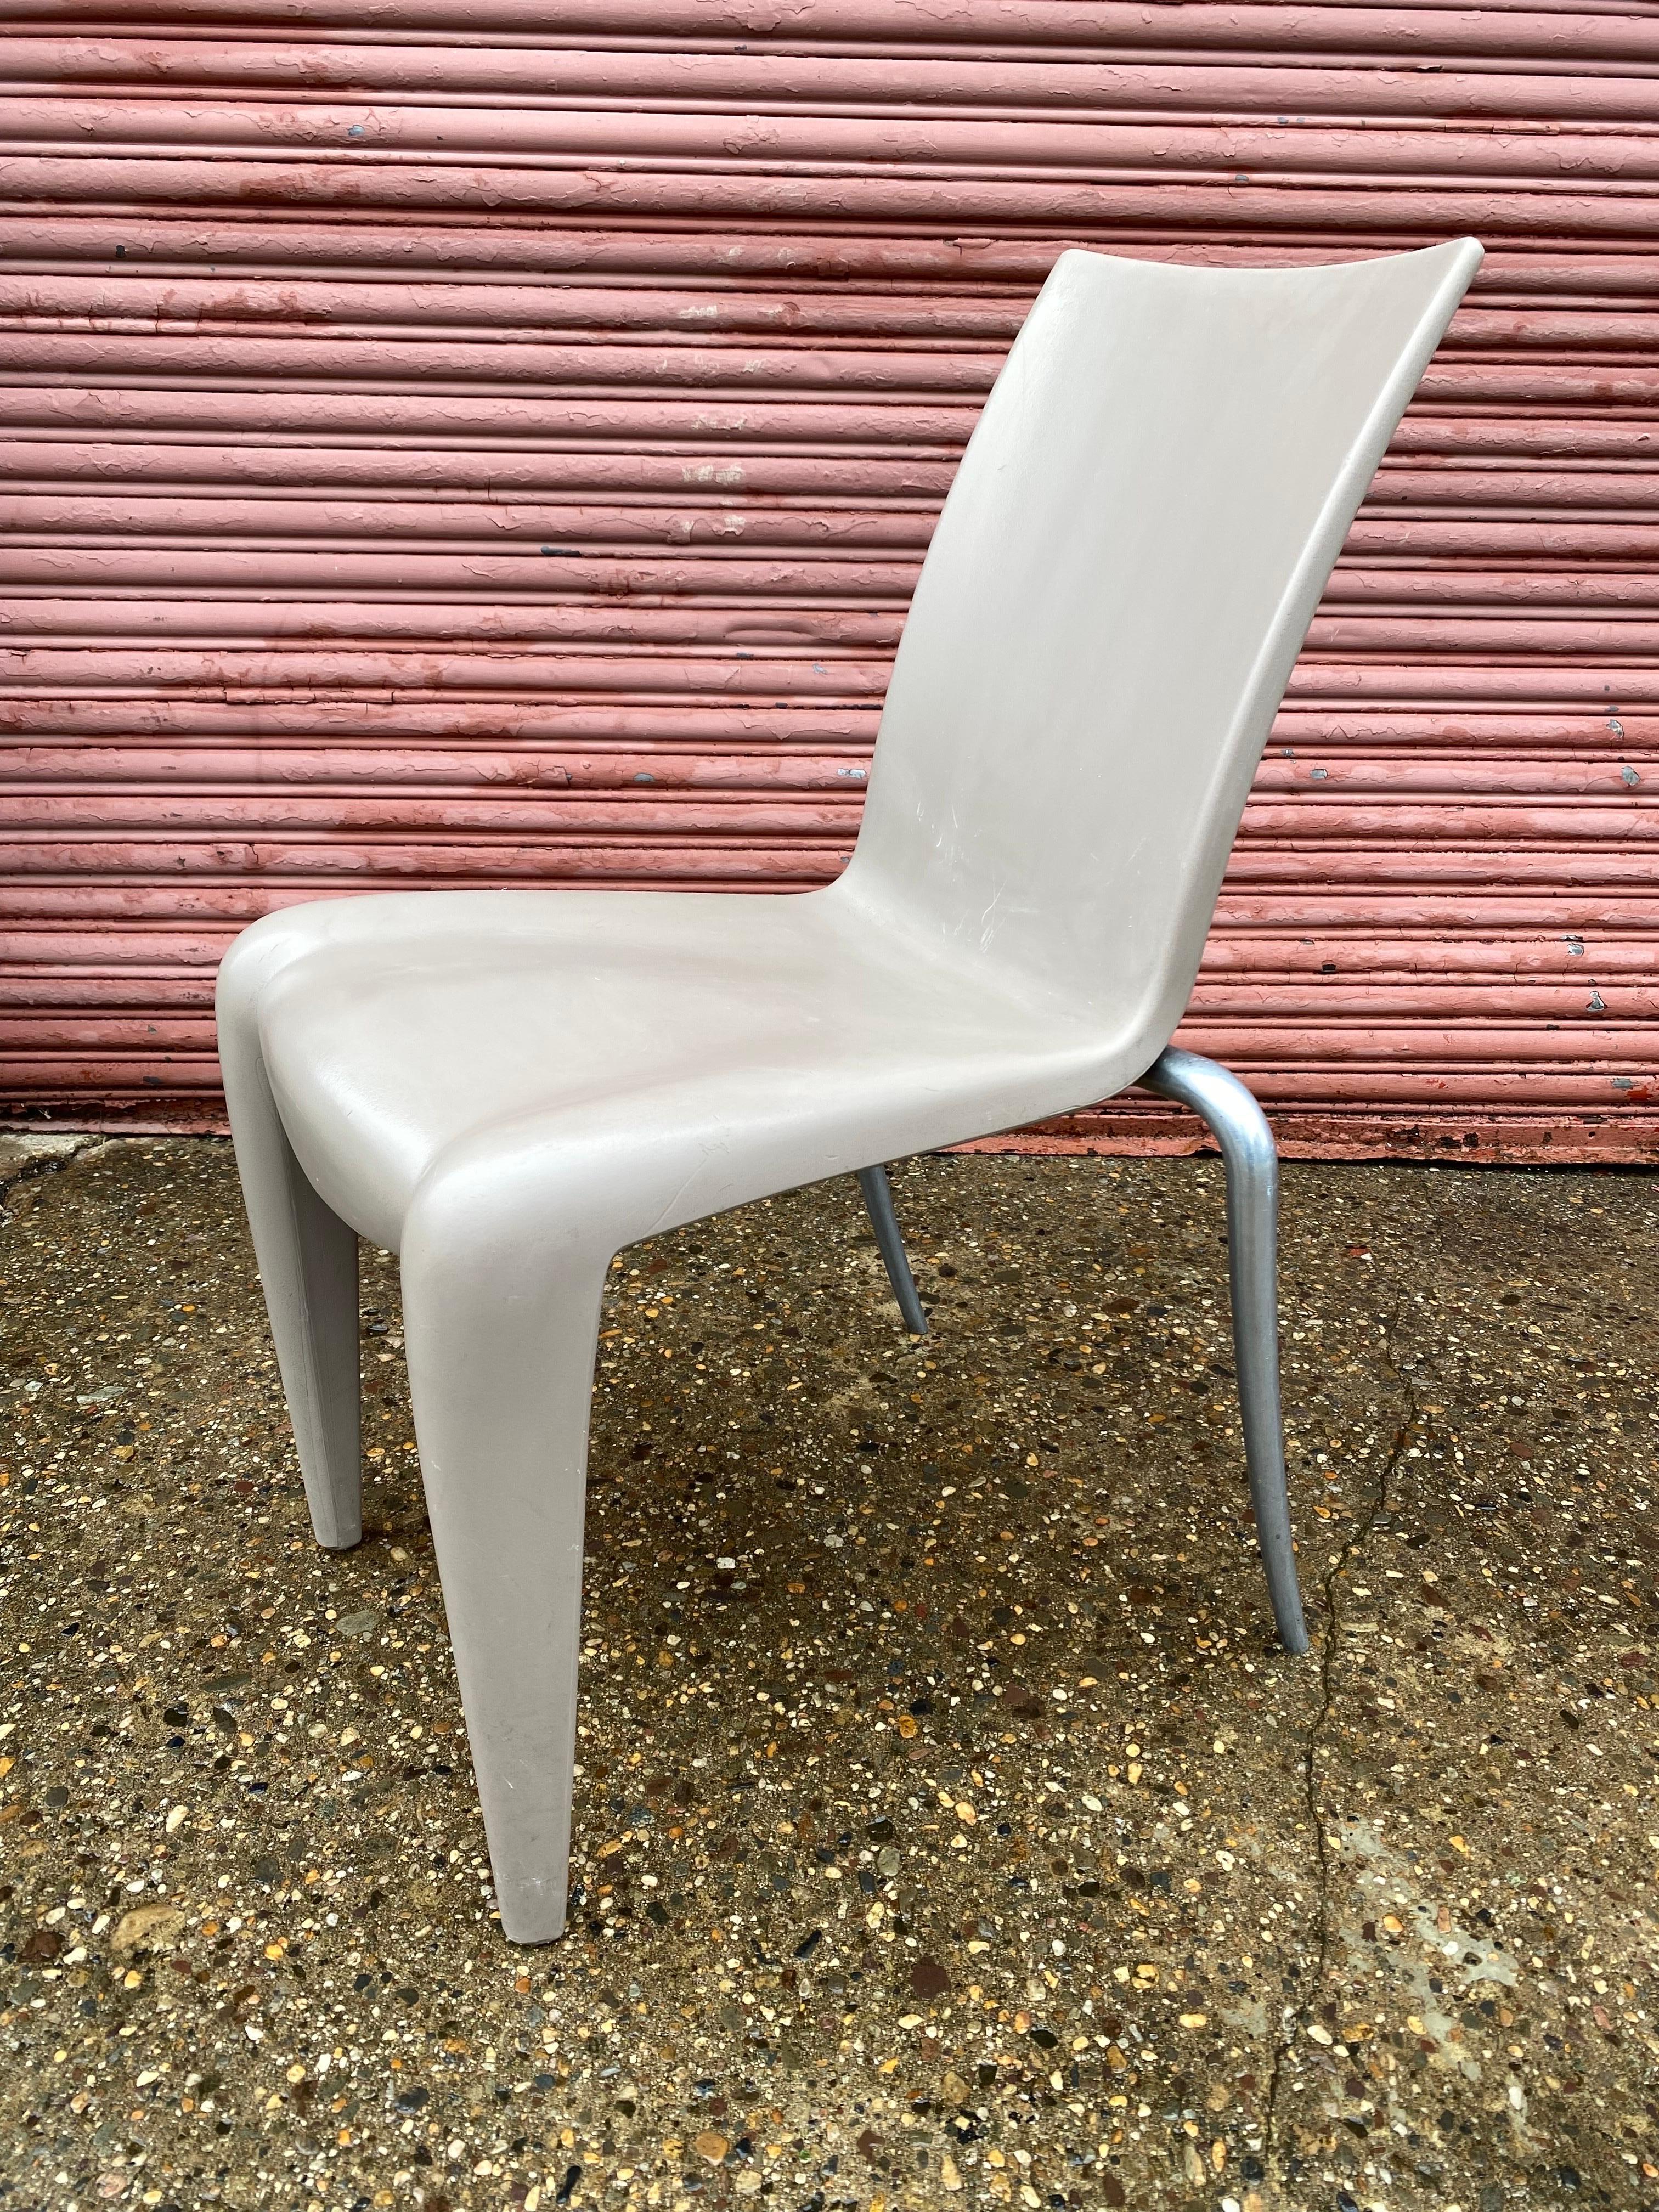 Philippe Starck for Vitra Louis 20 Stacking Chairs !  18 DISPONIBLES, prix séparés !  Pieds arrière en aluminium avec dossier, assise et pieds avant en plastique moulé.  Les chaises s'assoient bien et s'empilent quand on n'a pas la place ! 